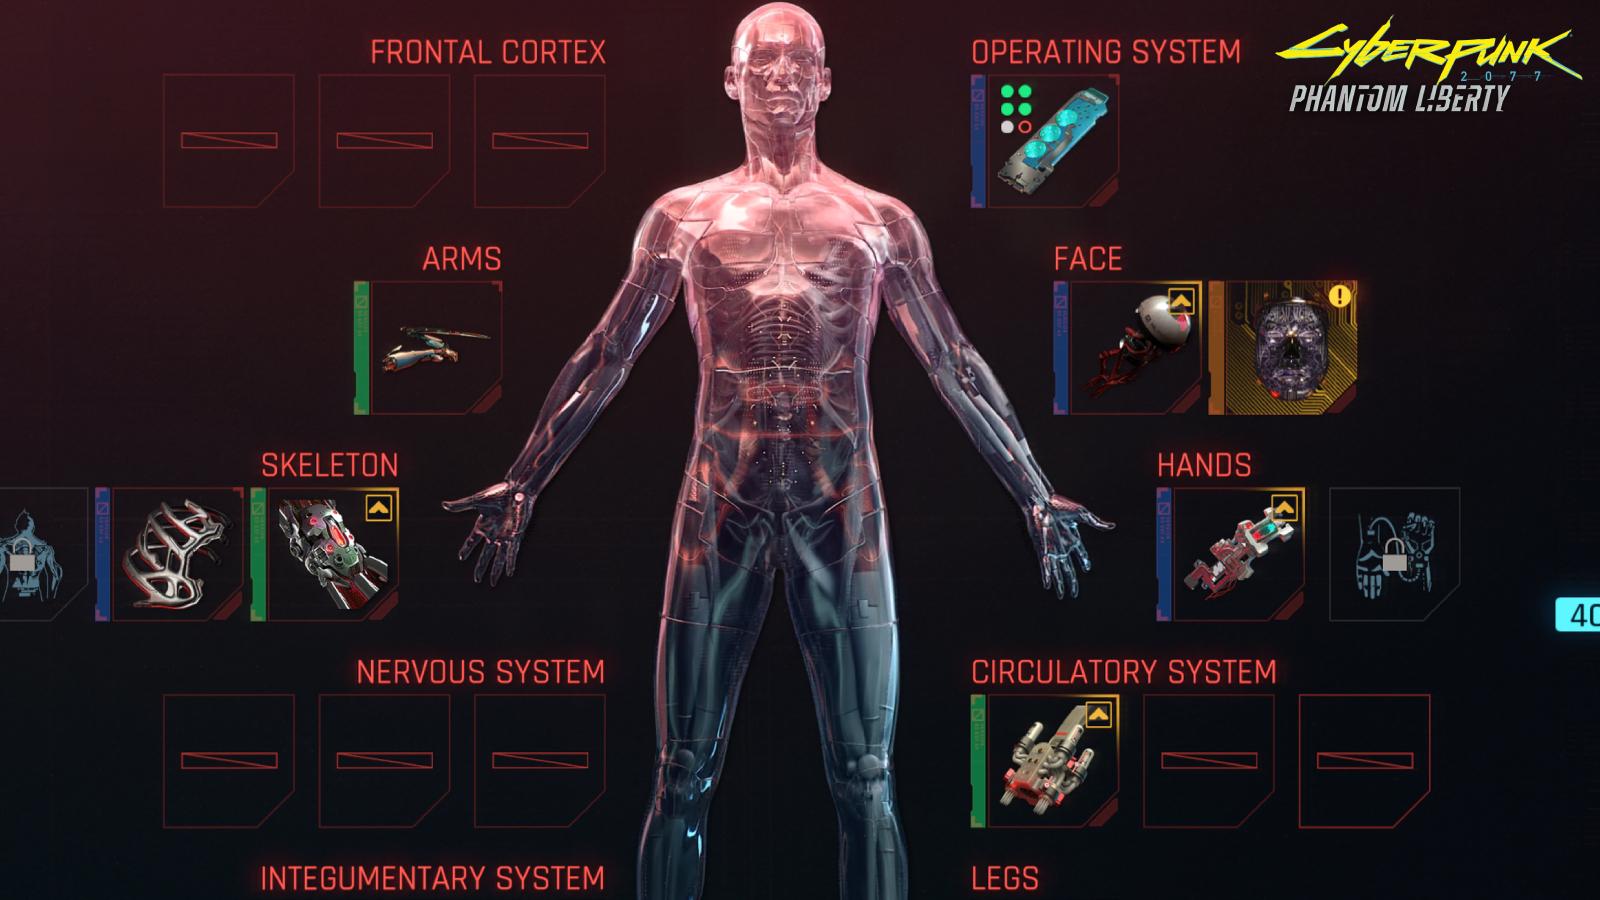 Cyberpunk 2077 Mod Adds Edgerunners' Cyberpsychosis